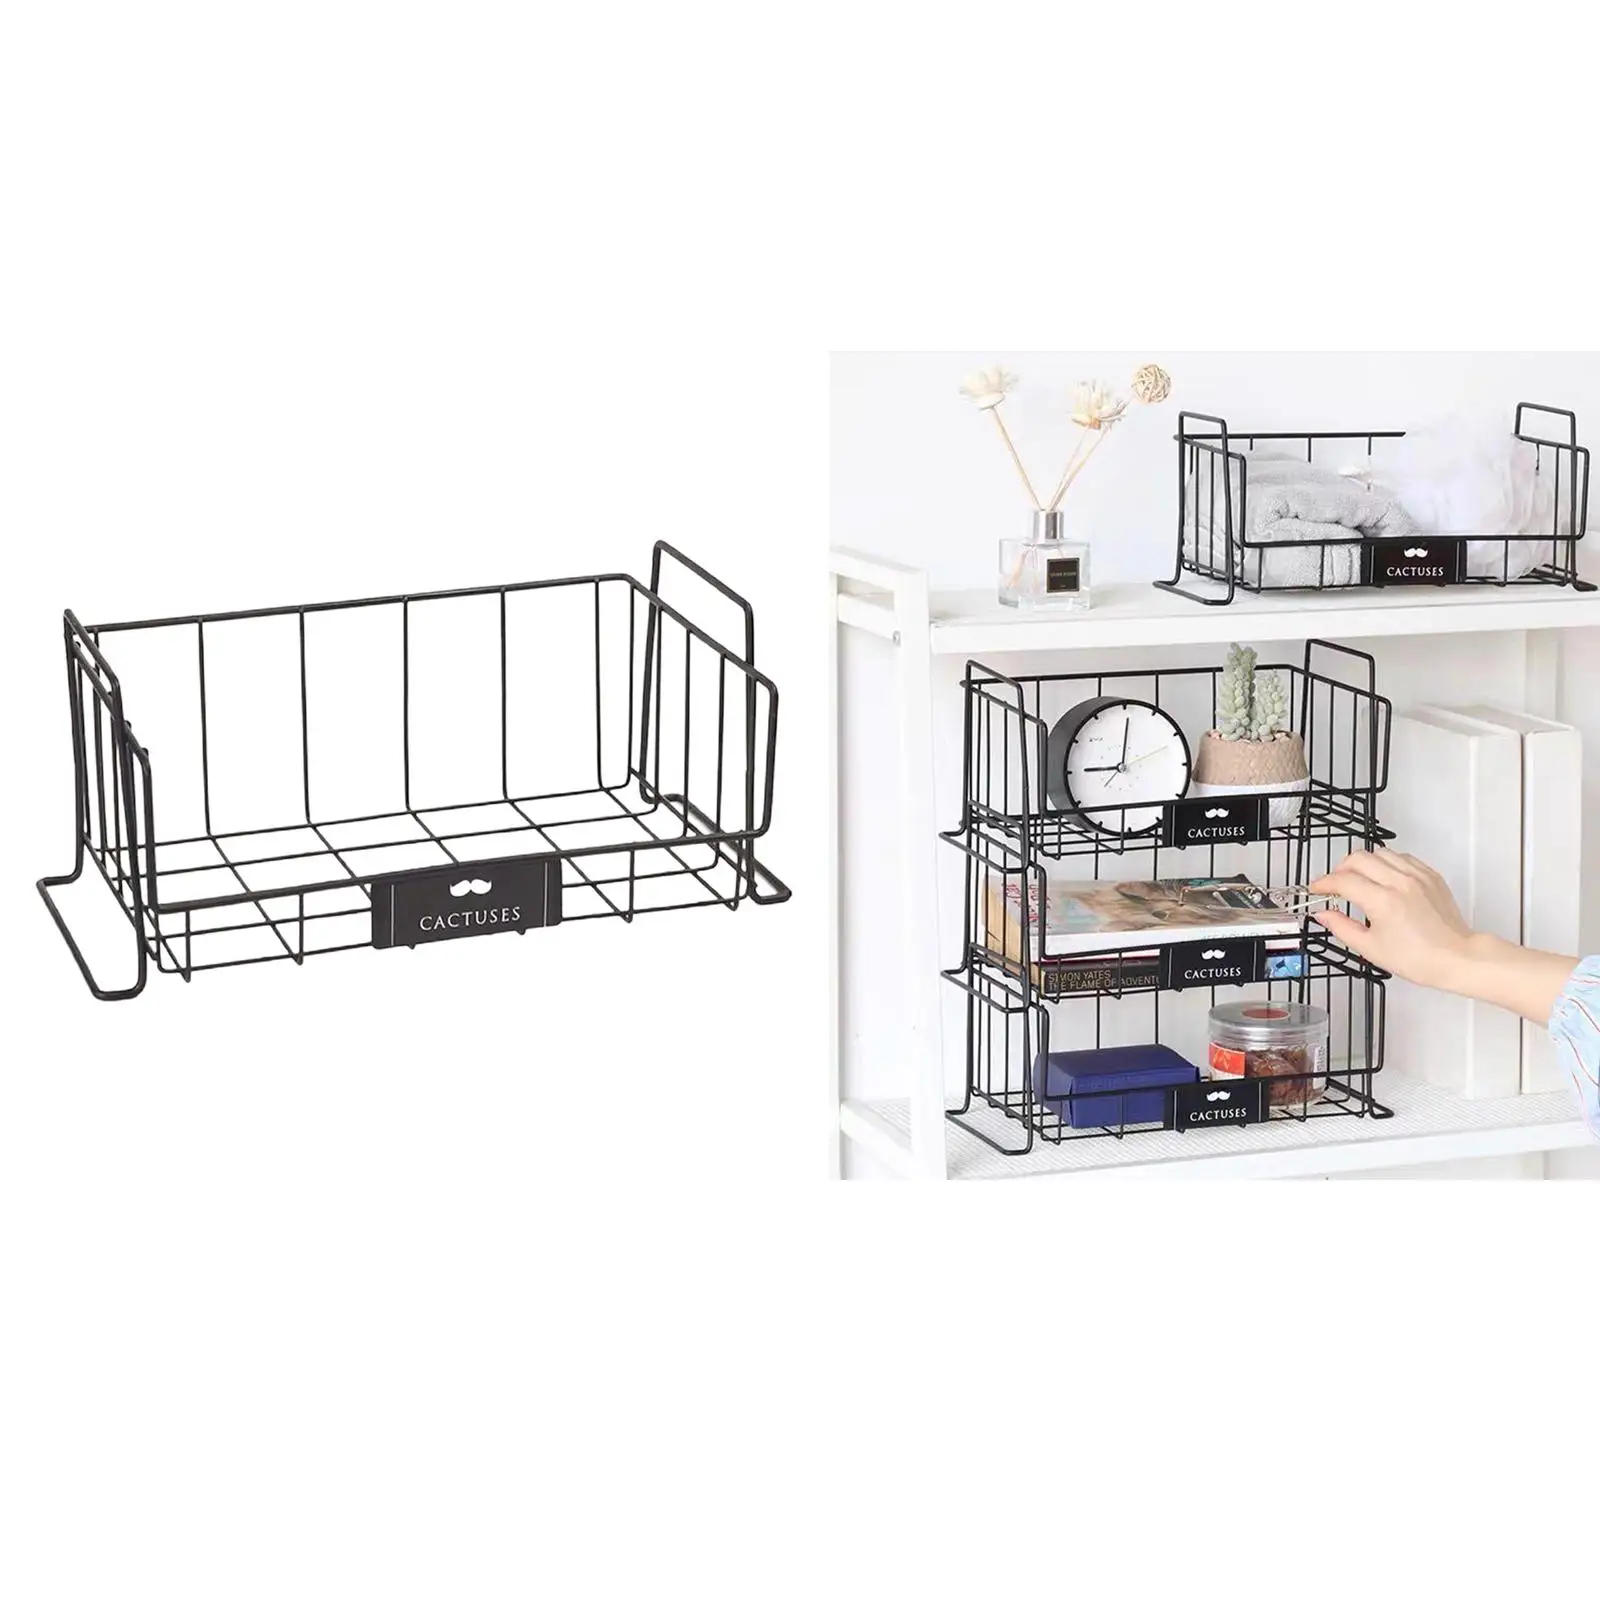 Freezer Wire Storage Organizer, Household Refrigerator Bin Basket with Handles